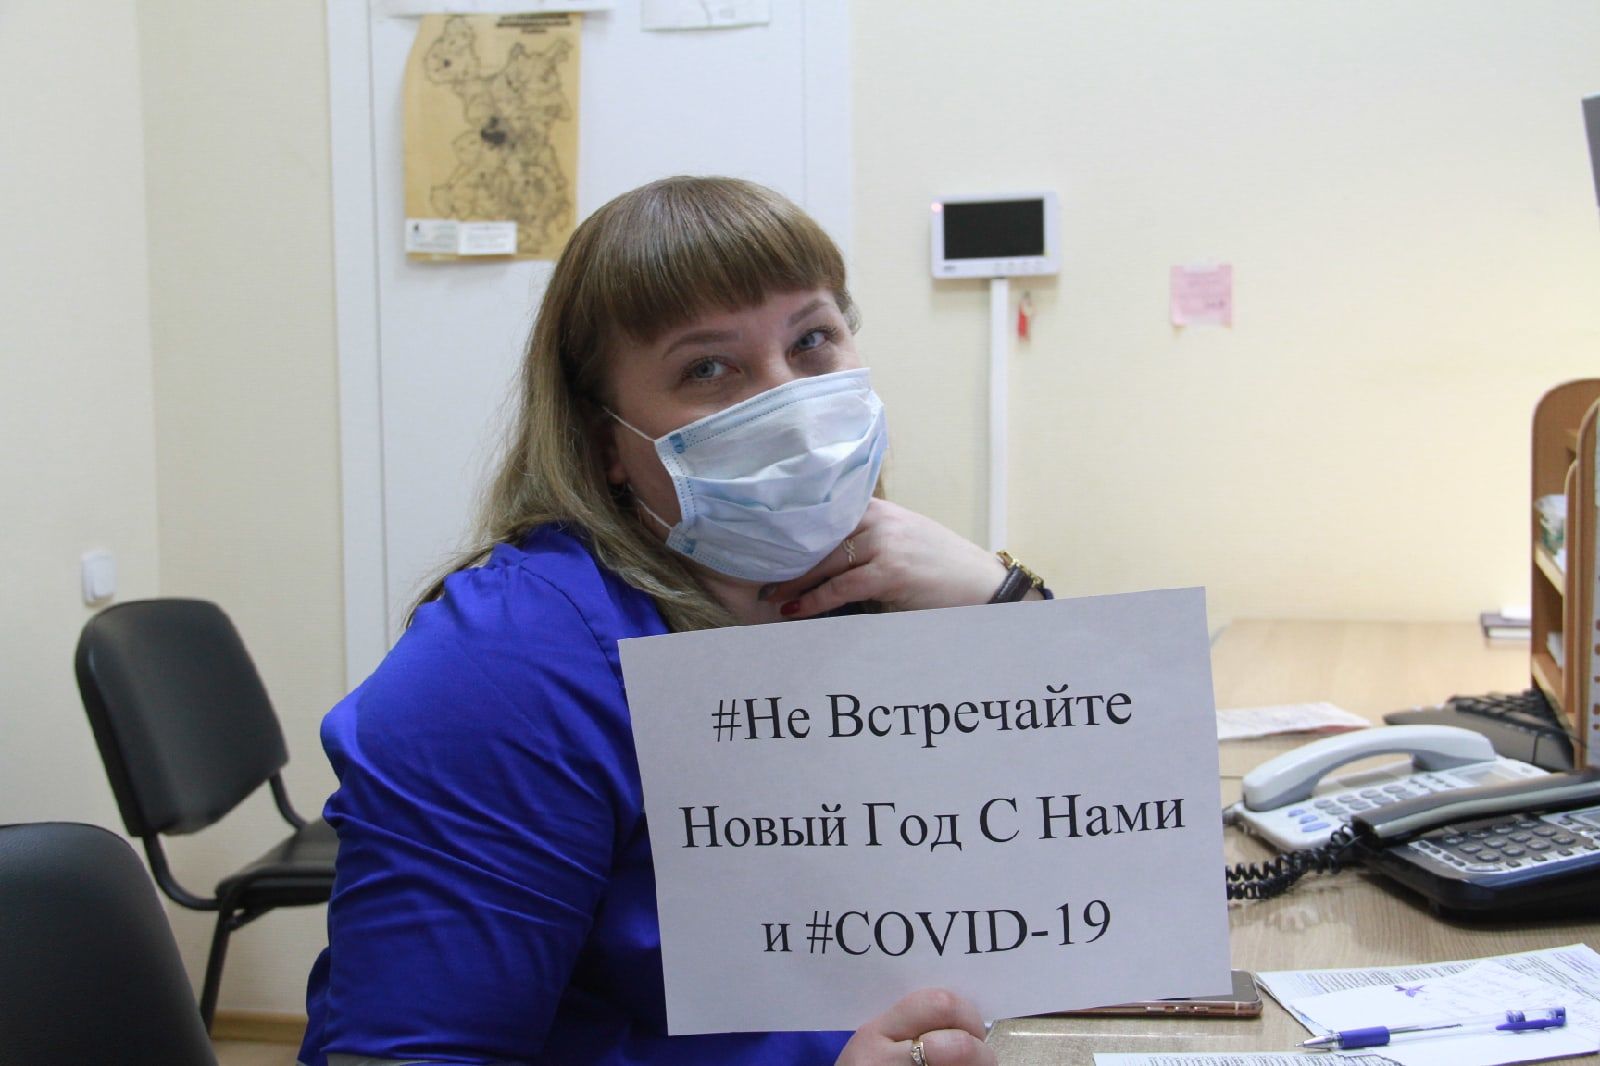 Бугульминские медики: Не встречайте Новый год с нами и COVID-19